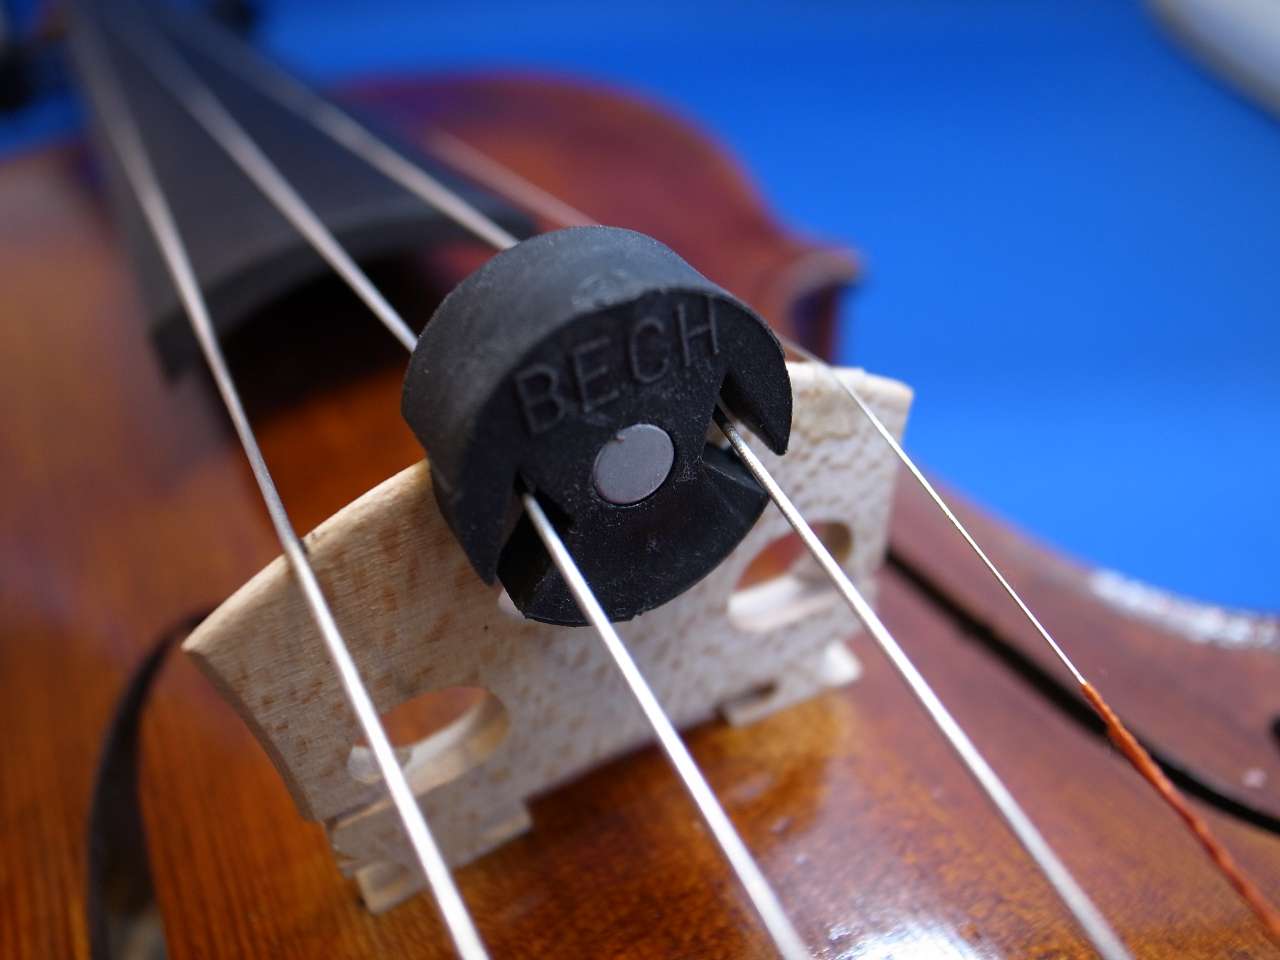 198円 ブランド激安セール会場 金属製バイオリンミュート Violin Metal Mute Chrome